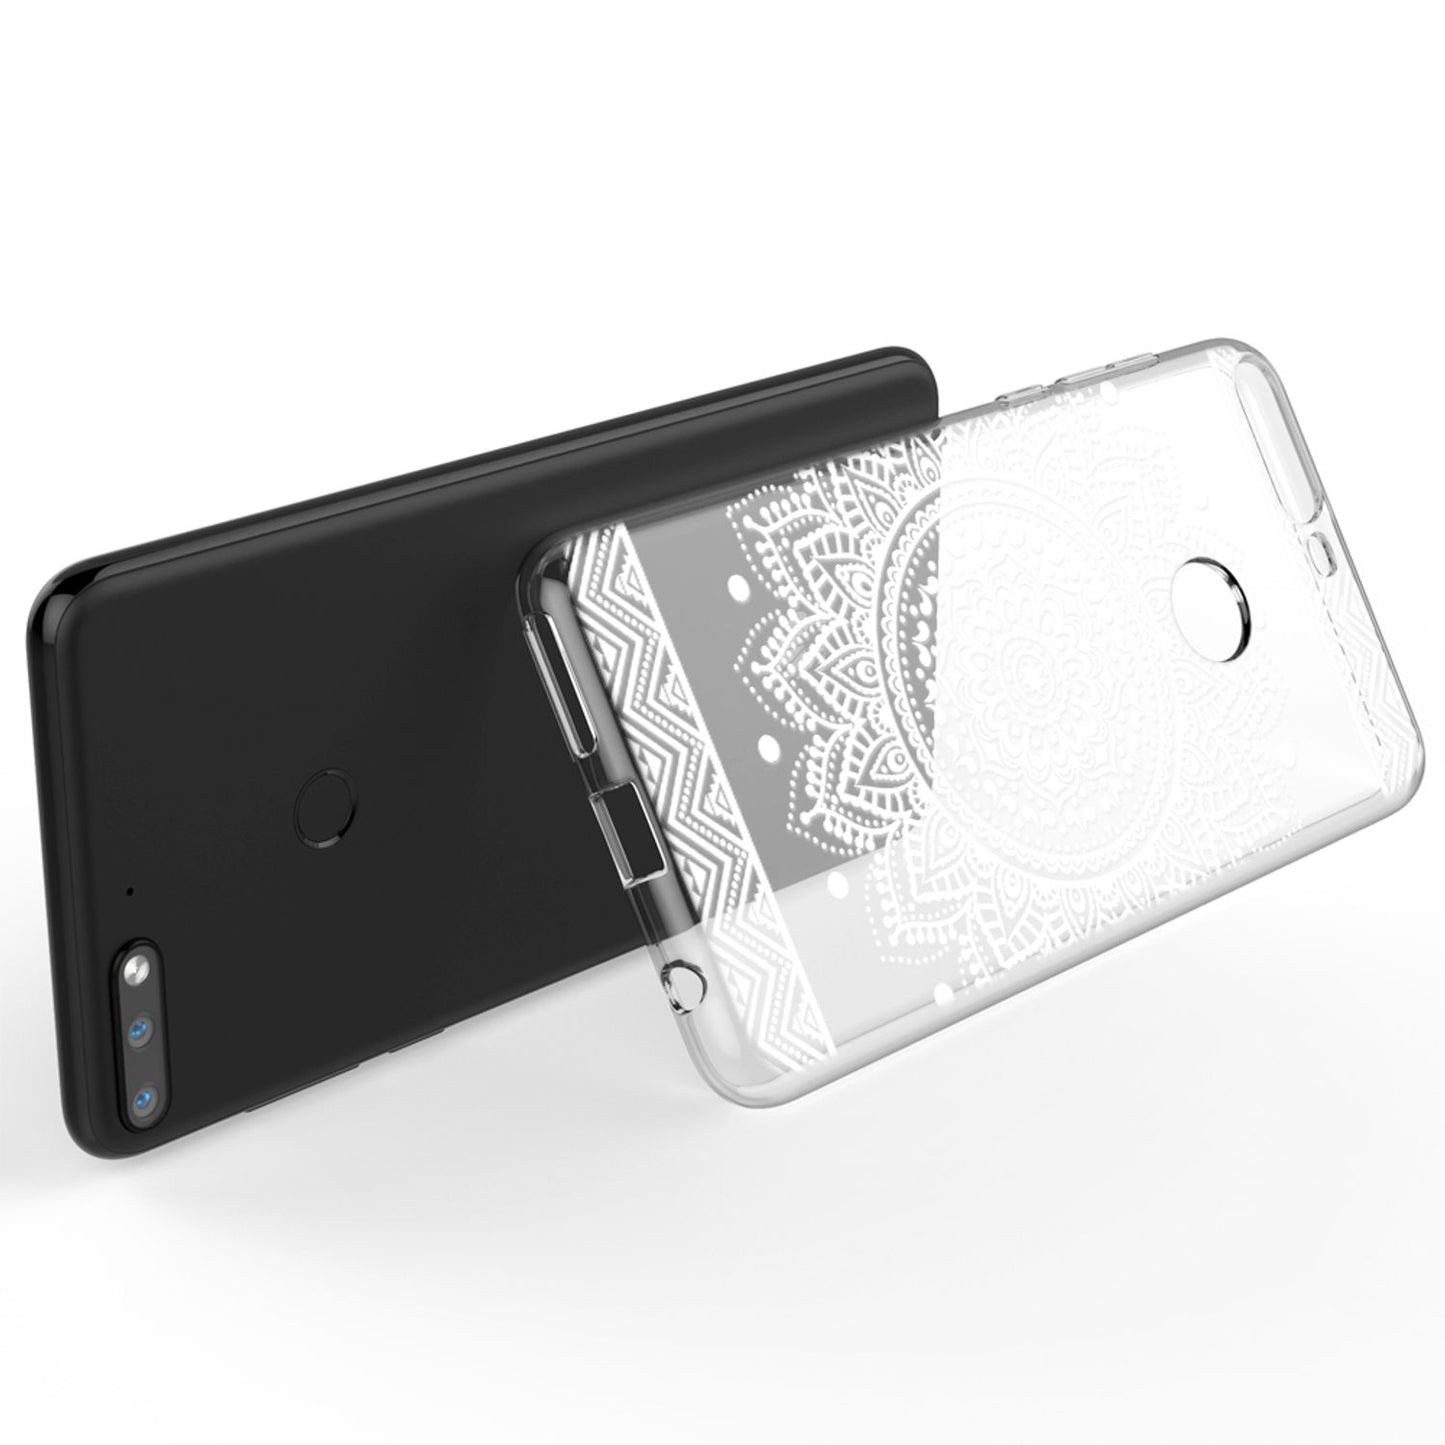 NALIA Hülle für Huawei Y7 (18), Slim Handyhülle Silikon Motiv Case Schutz Cover